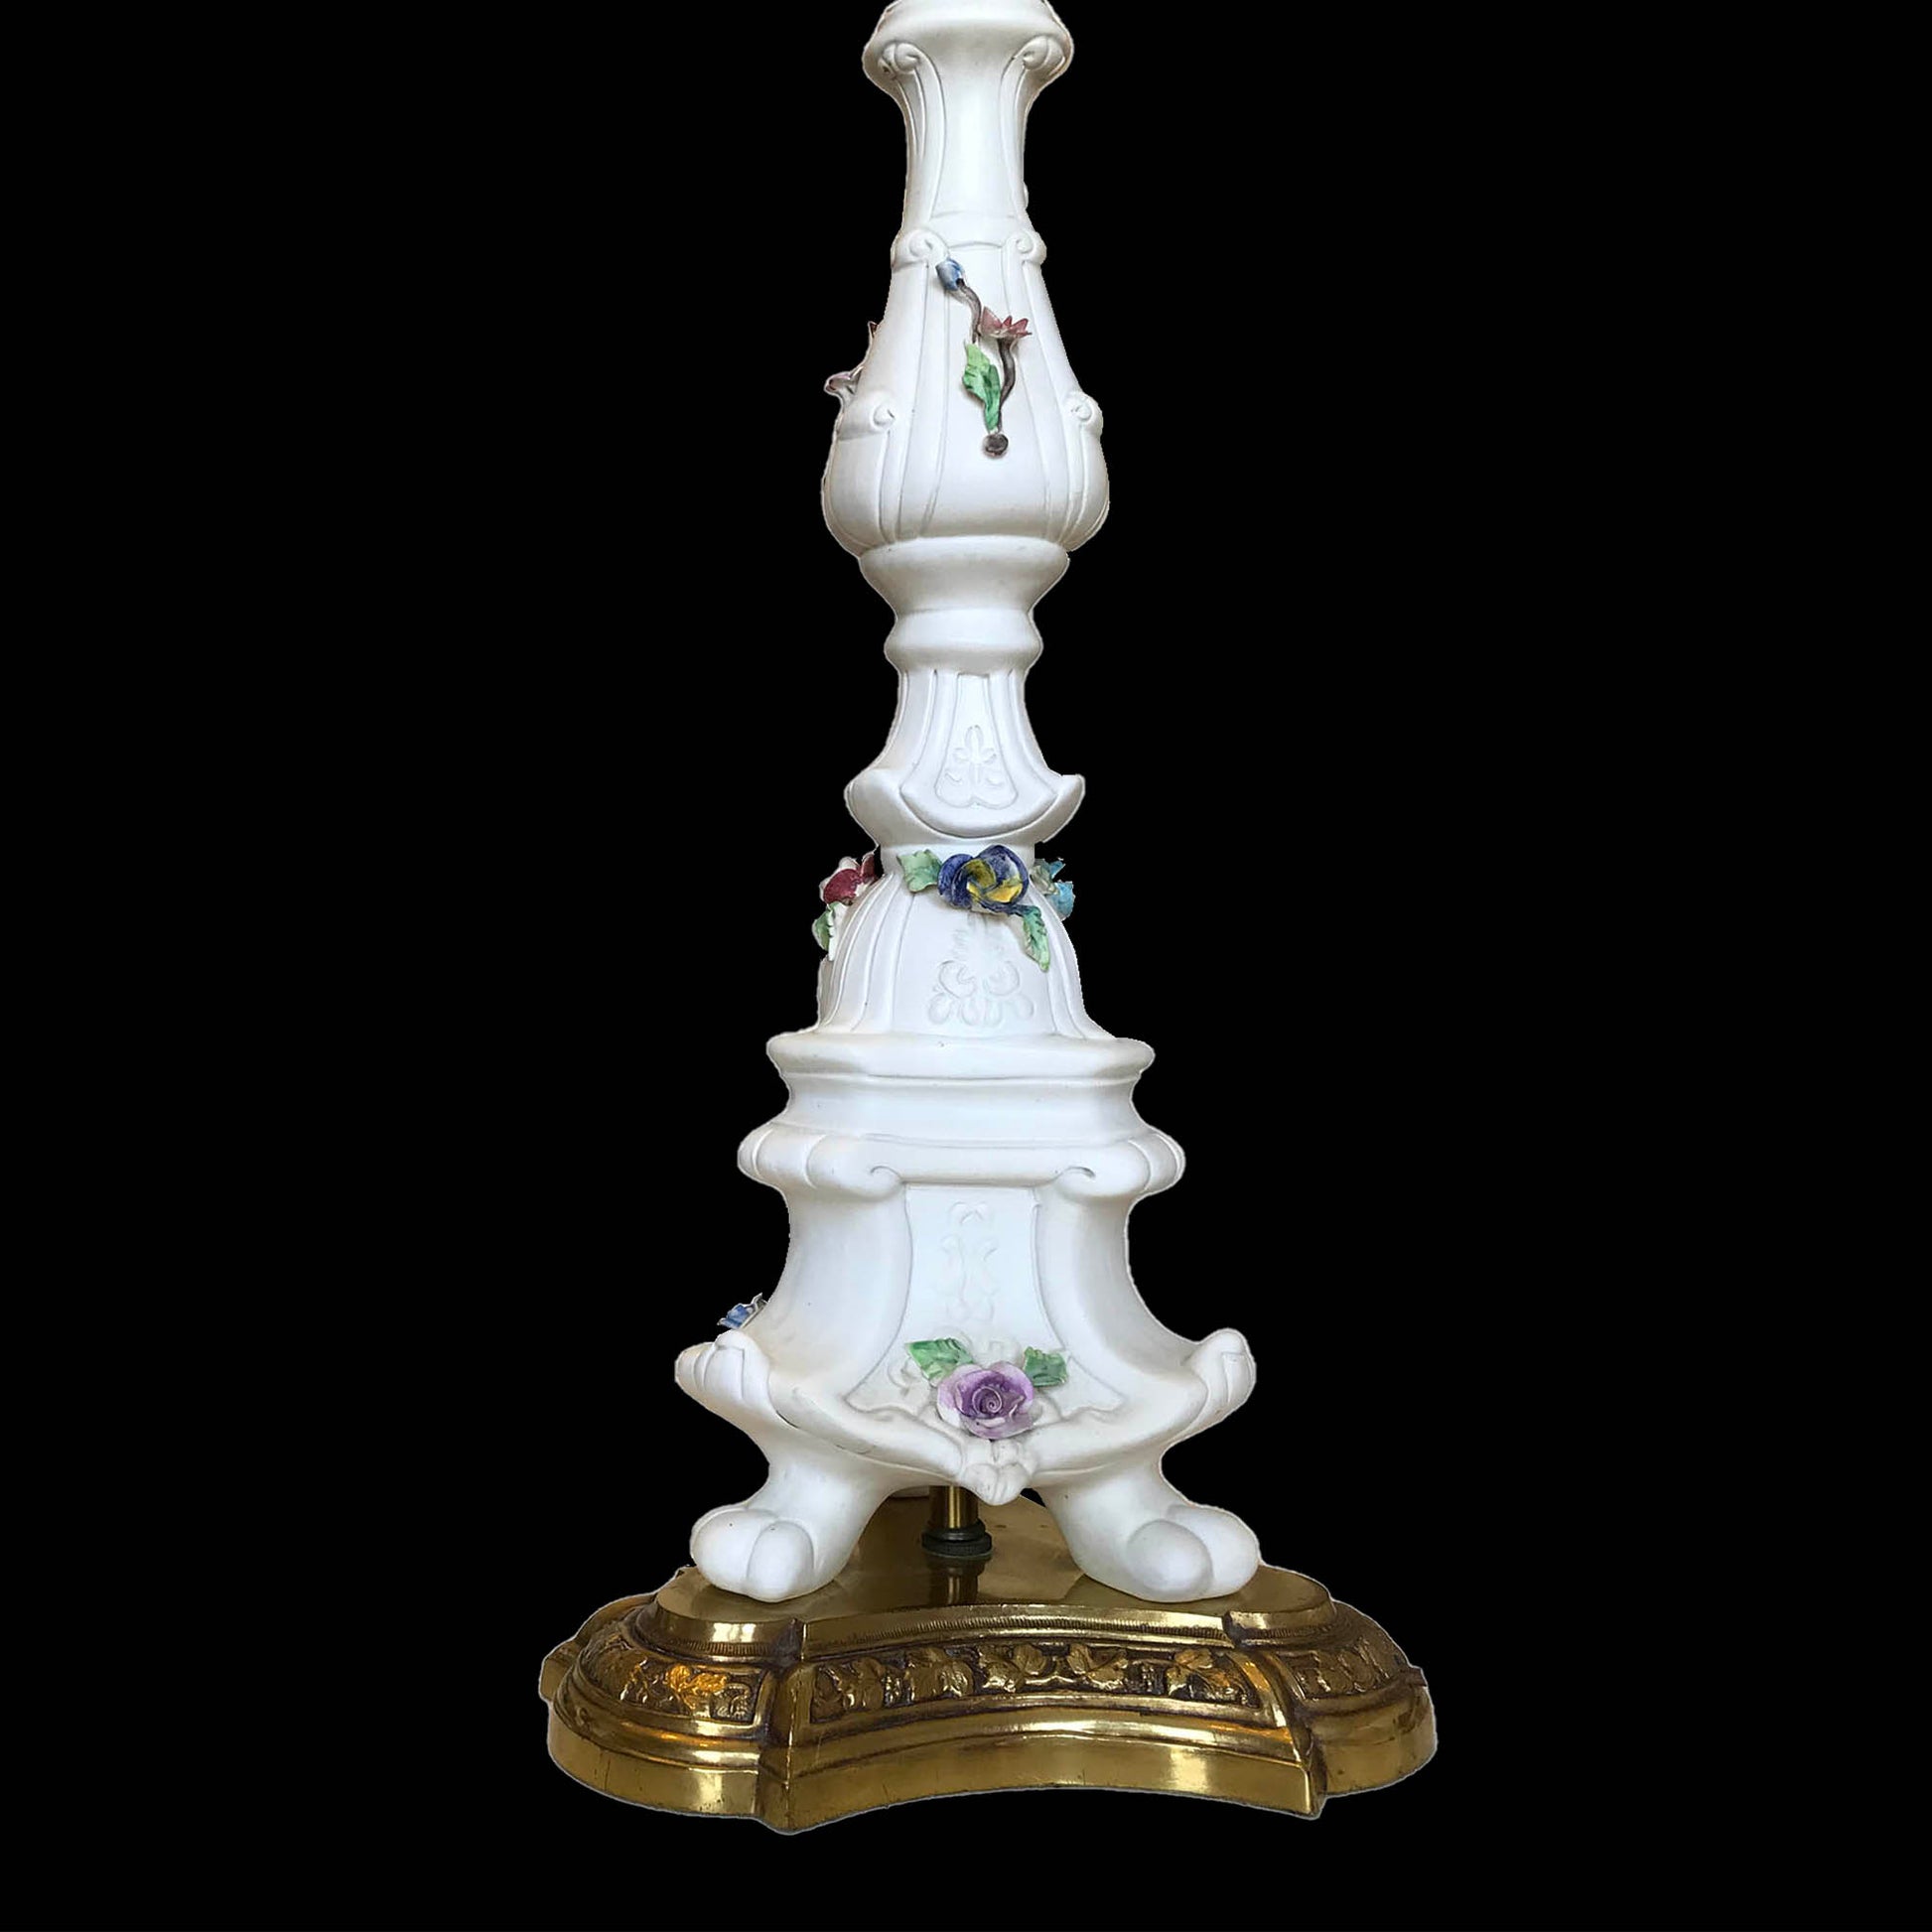 Vintage-Bassano-Capodimente-Table-Lamp.-3001-Spec-Lamp.-Rare.-Shop-eBargainsAndDeals.com or Etsy